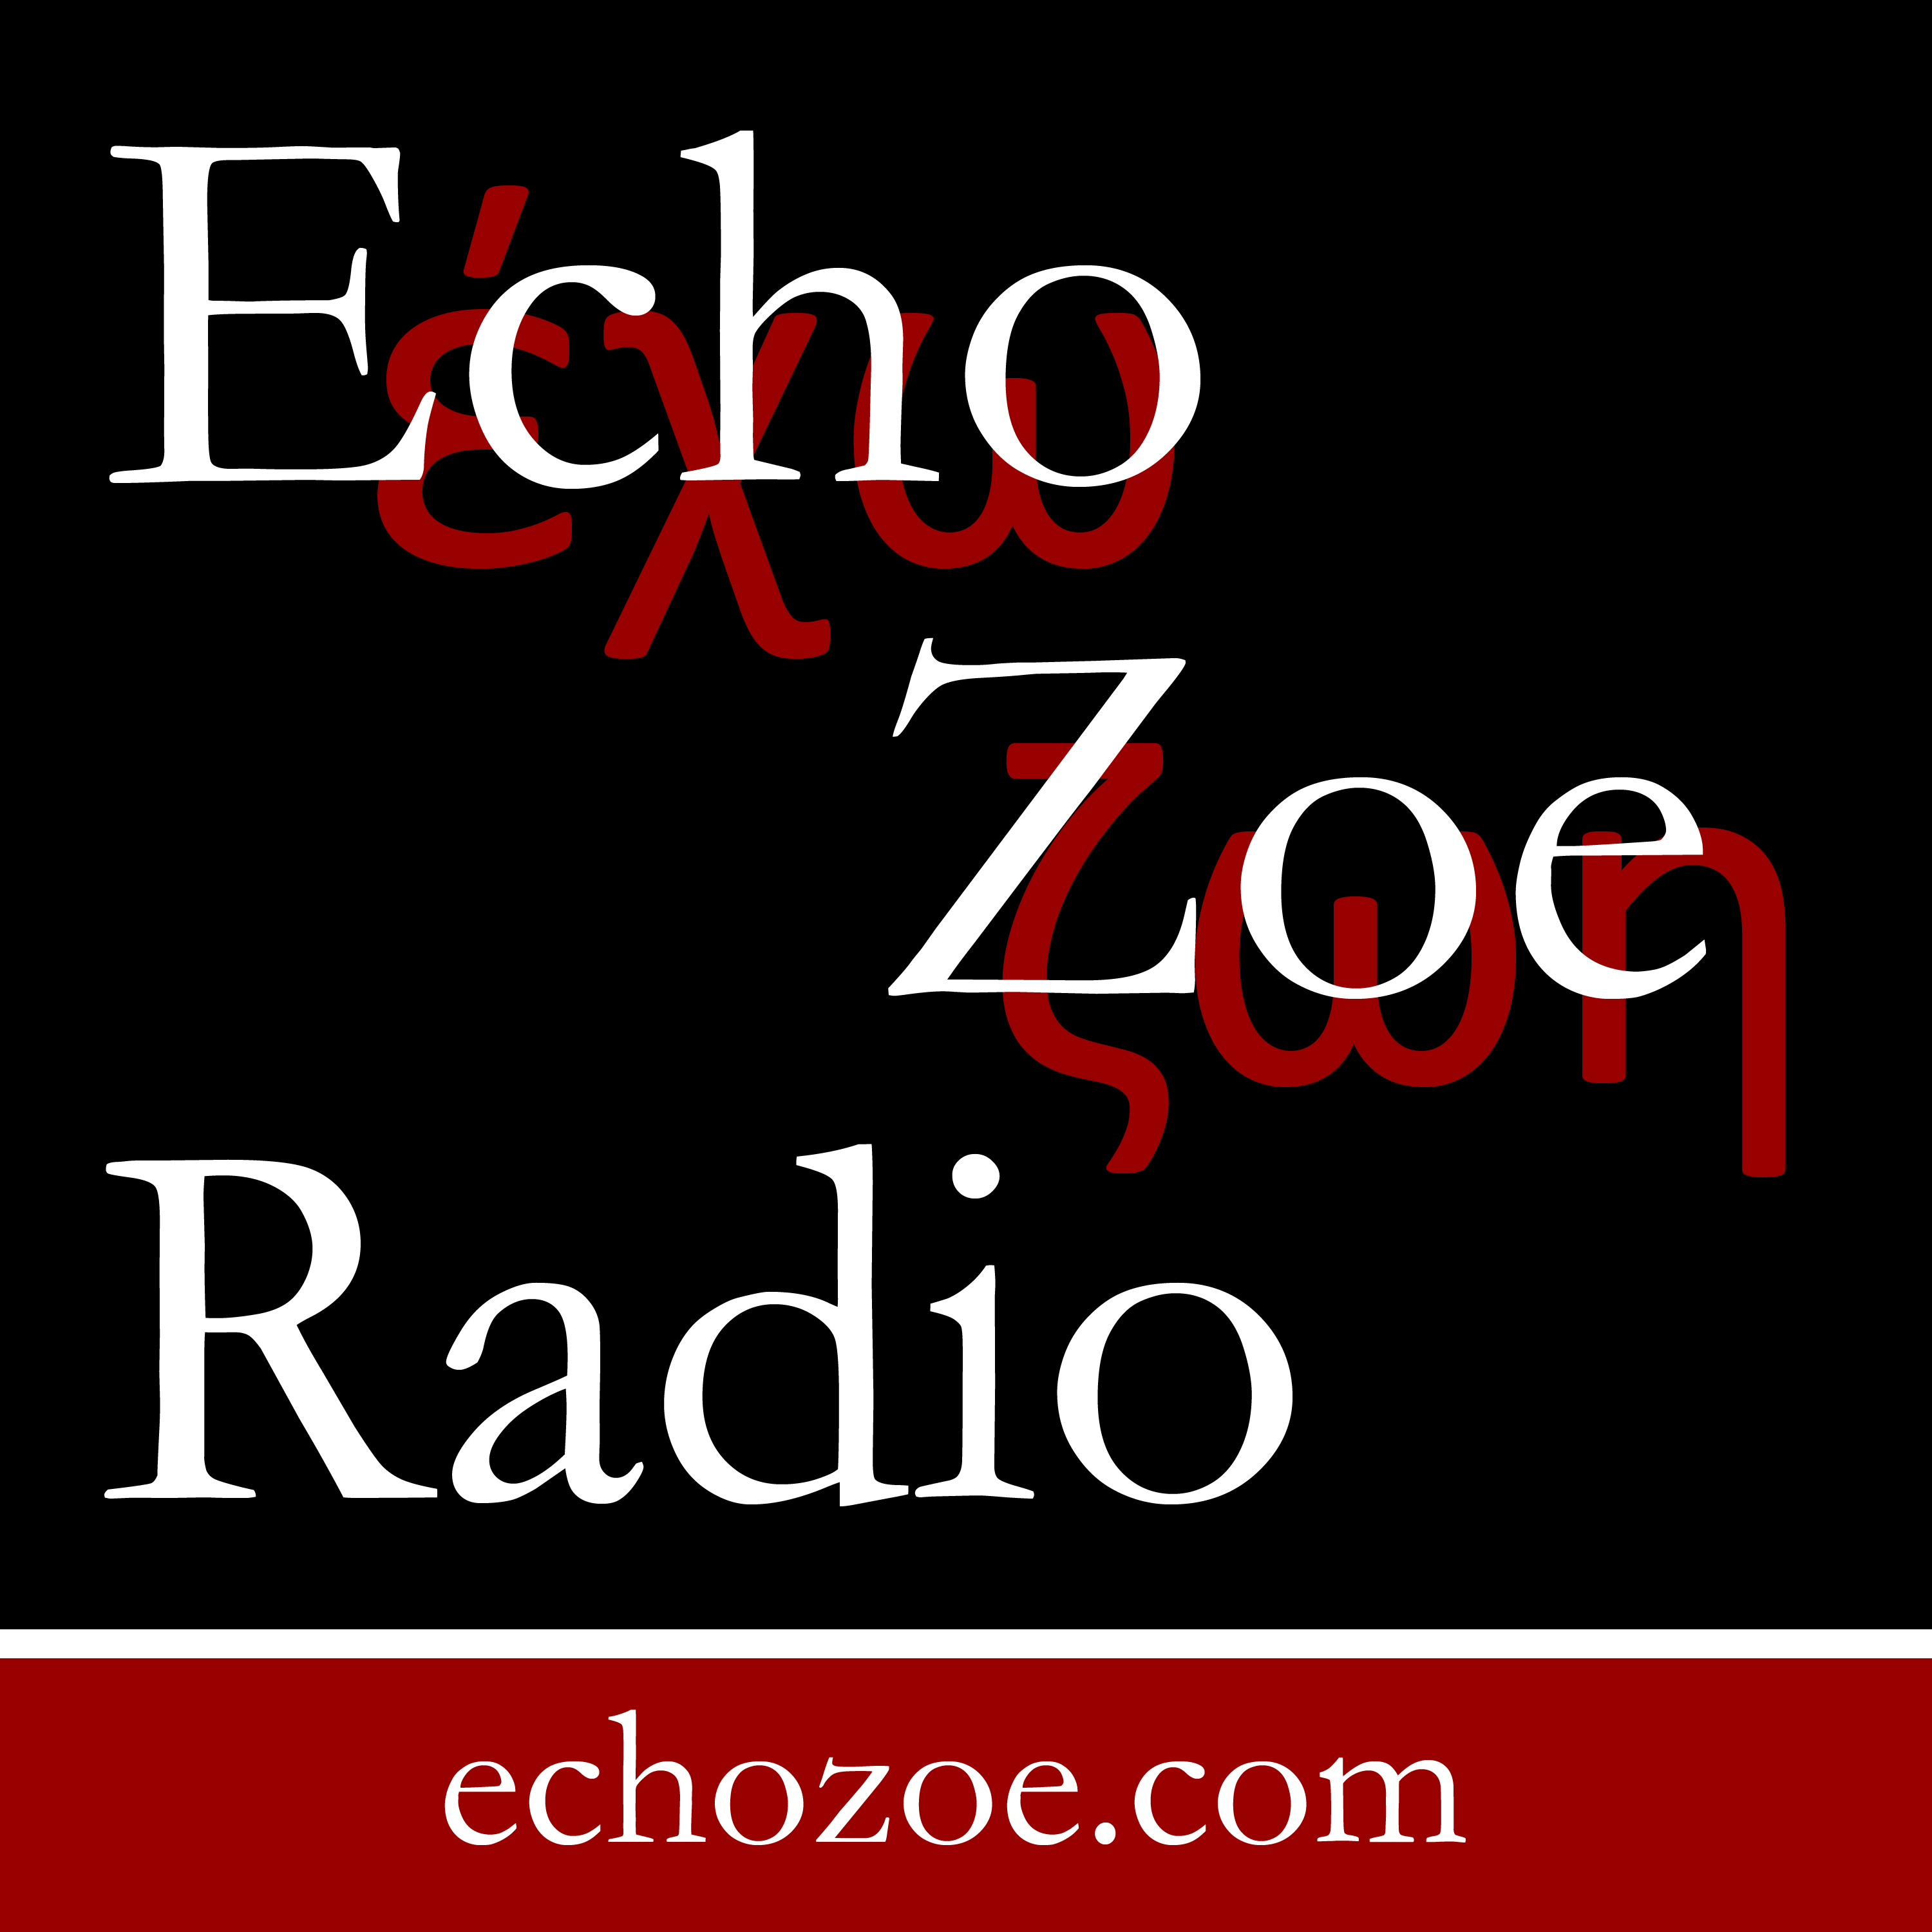 Echo Zoe Radio